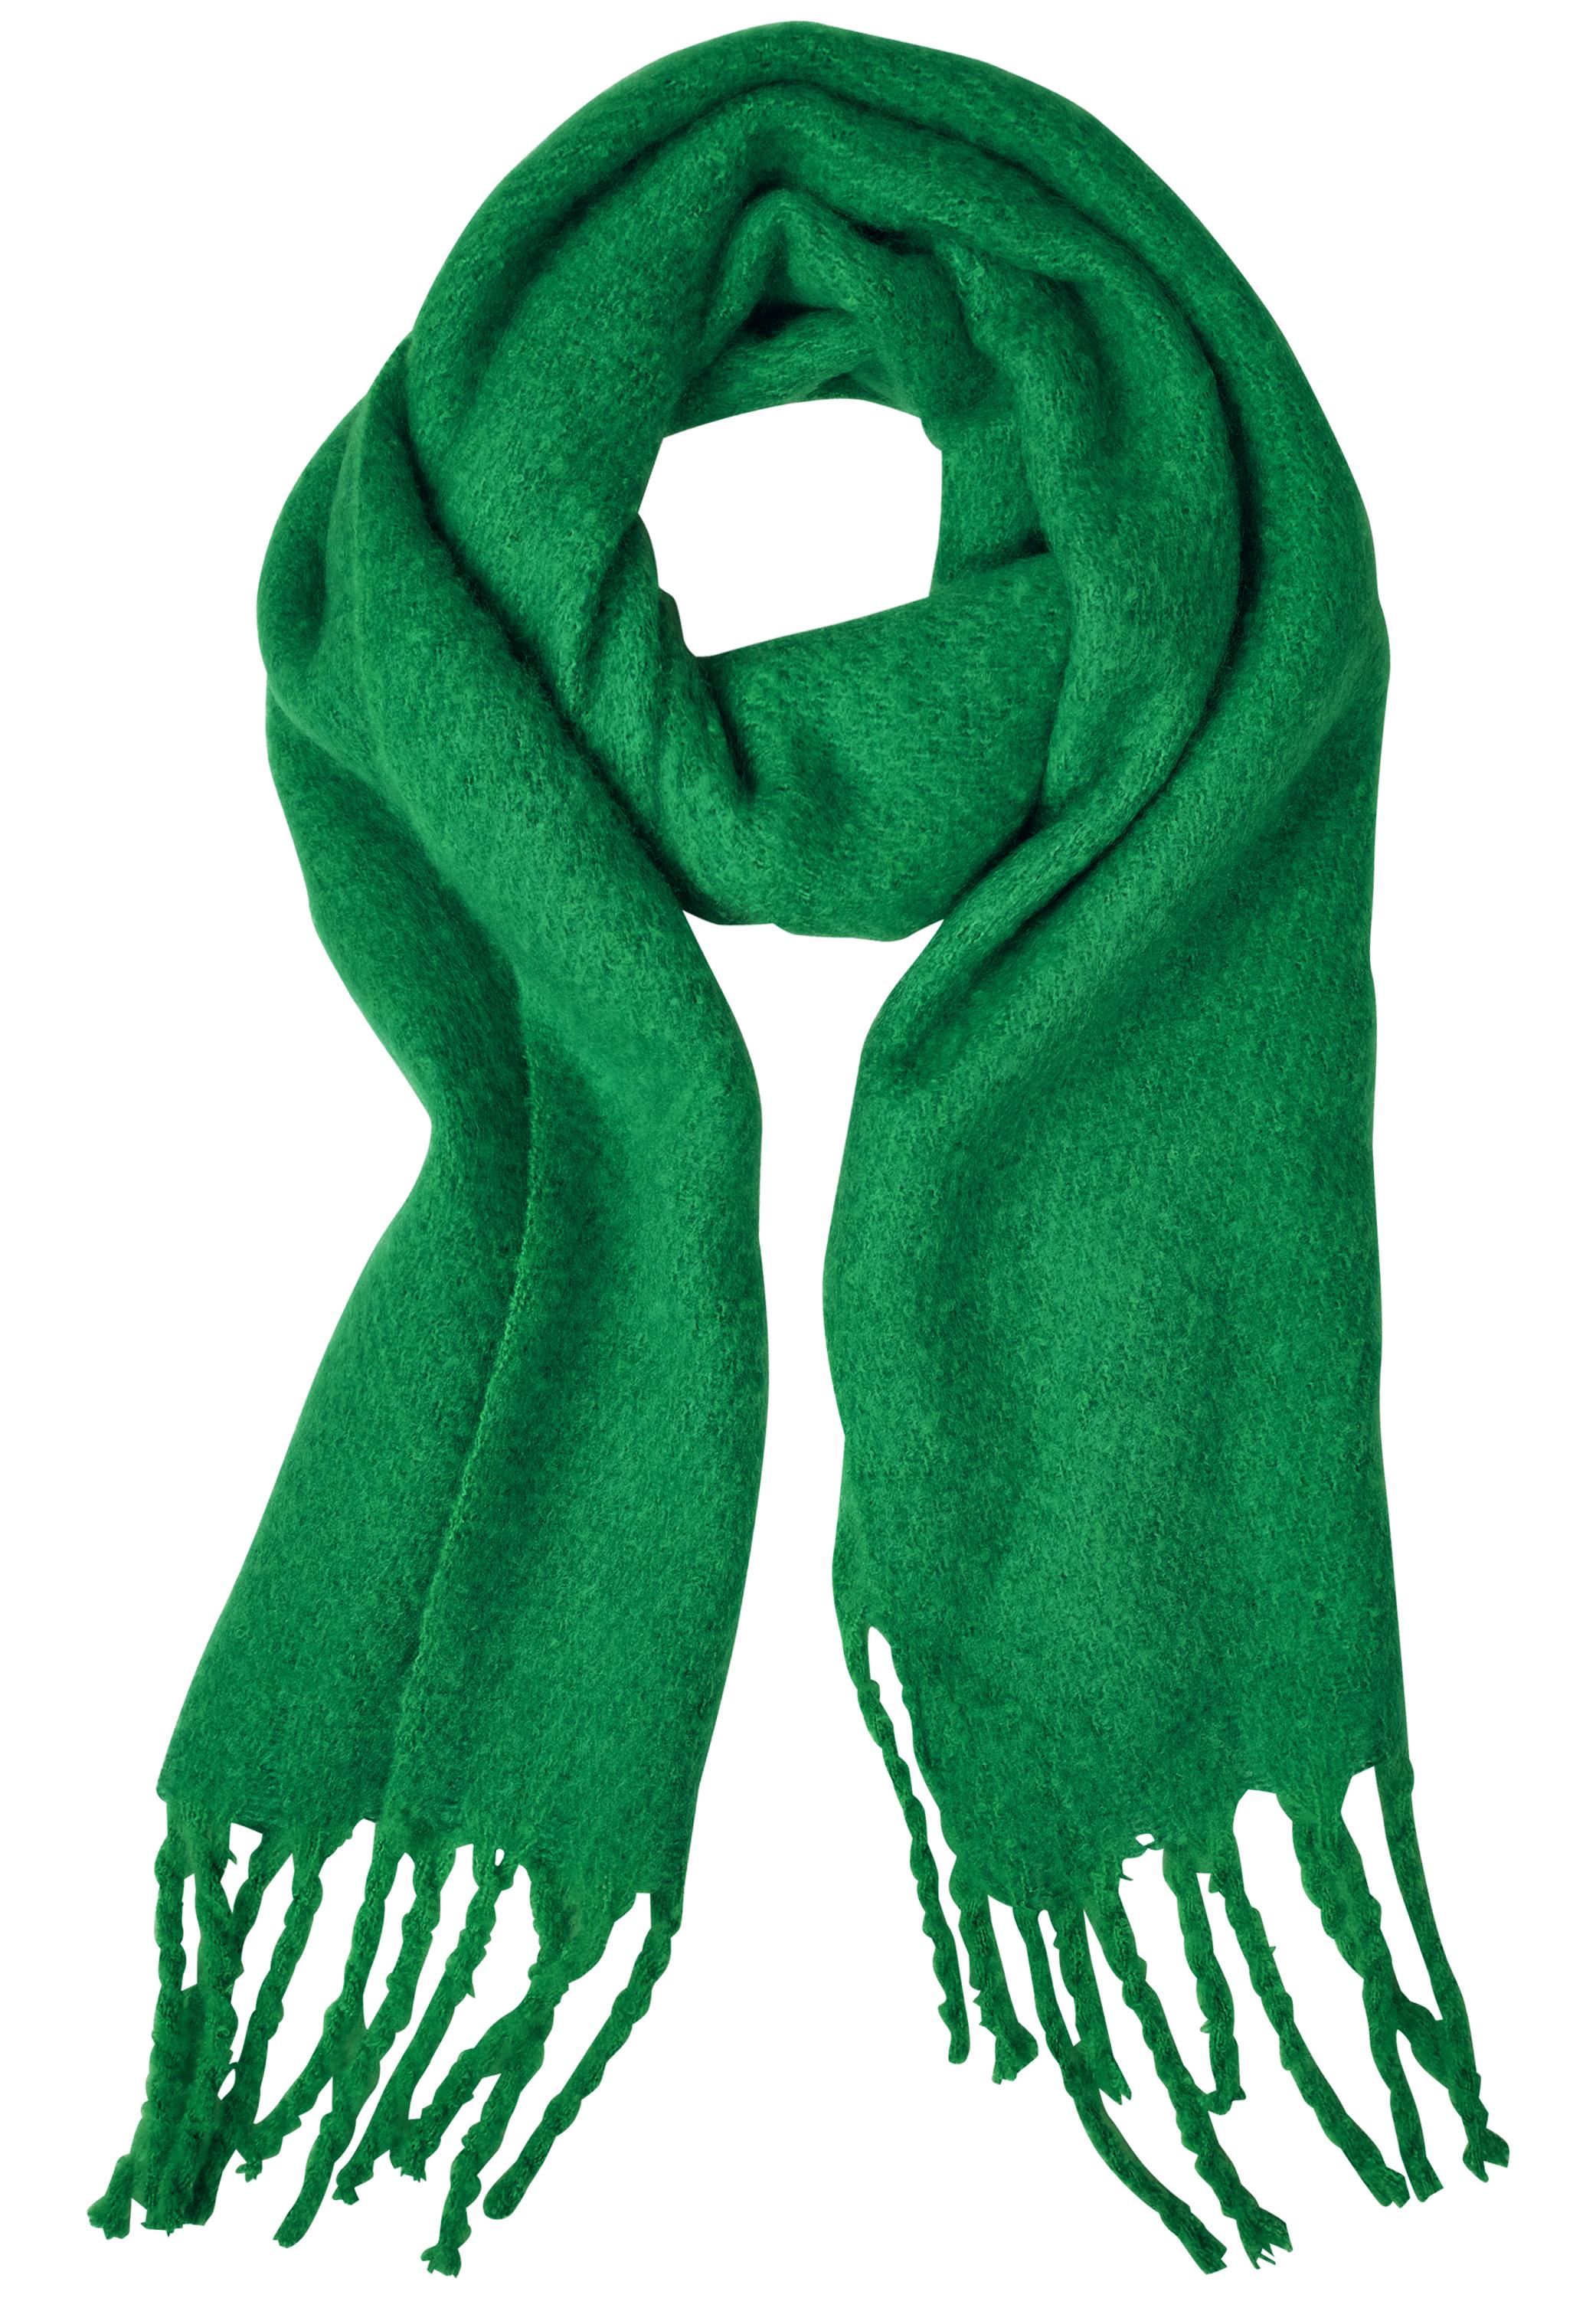 Street One leichter Schal Unifarben leicht Transparent in Teal Green Grün